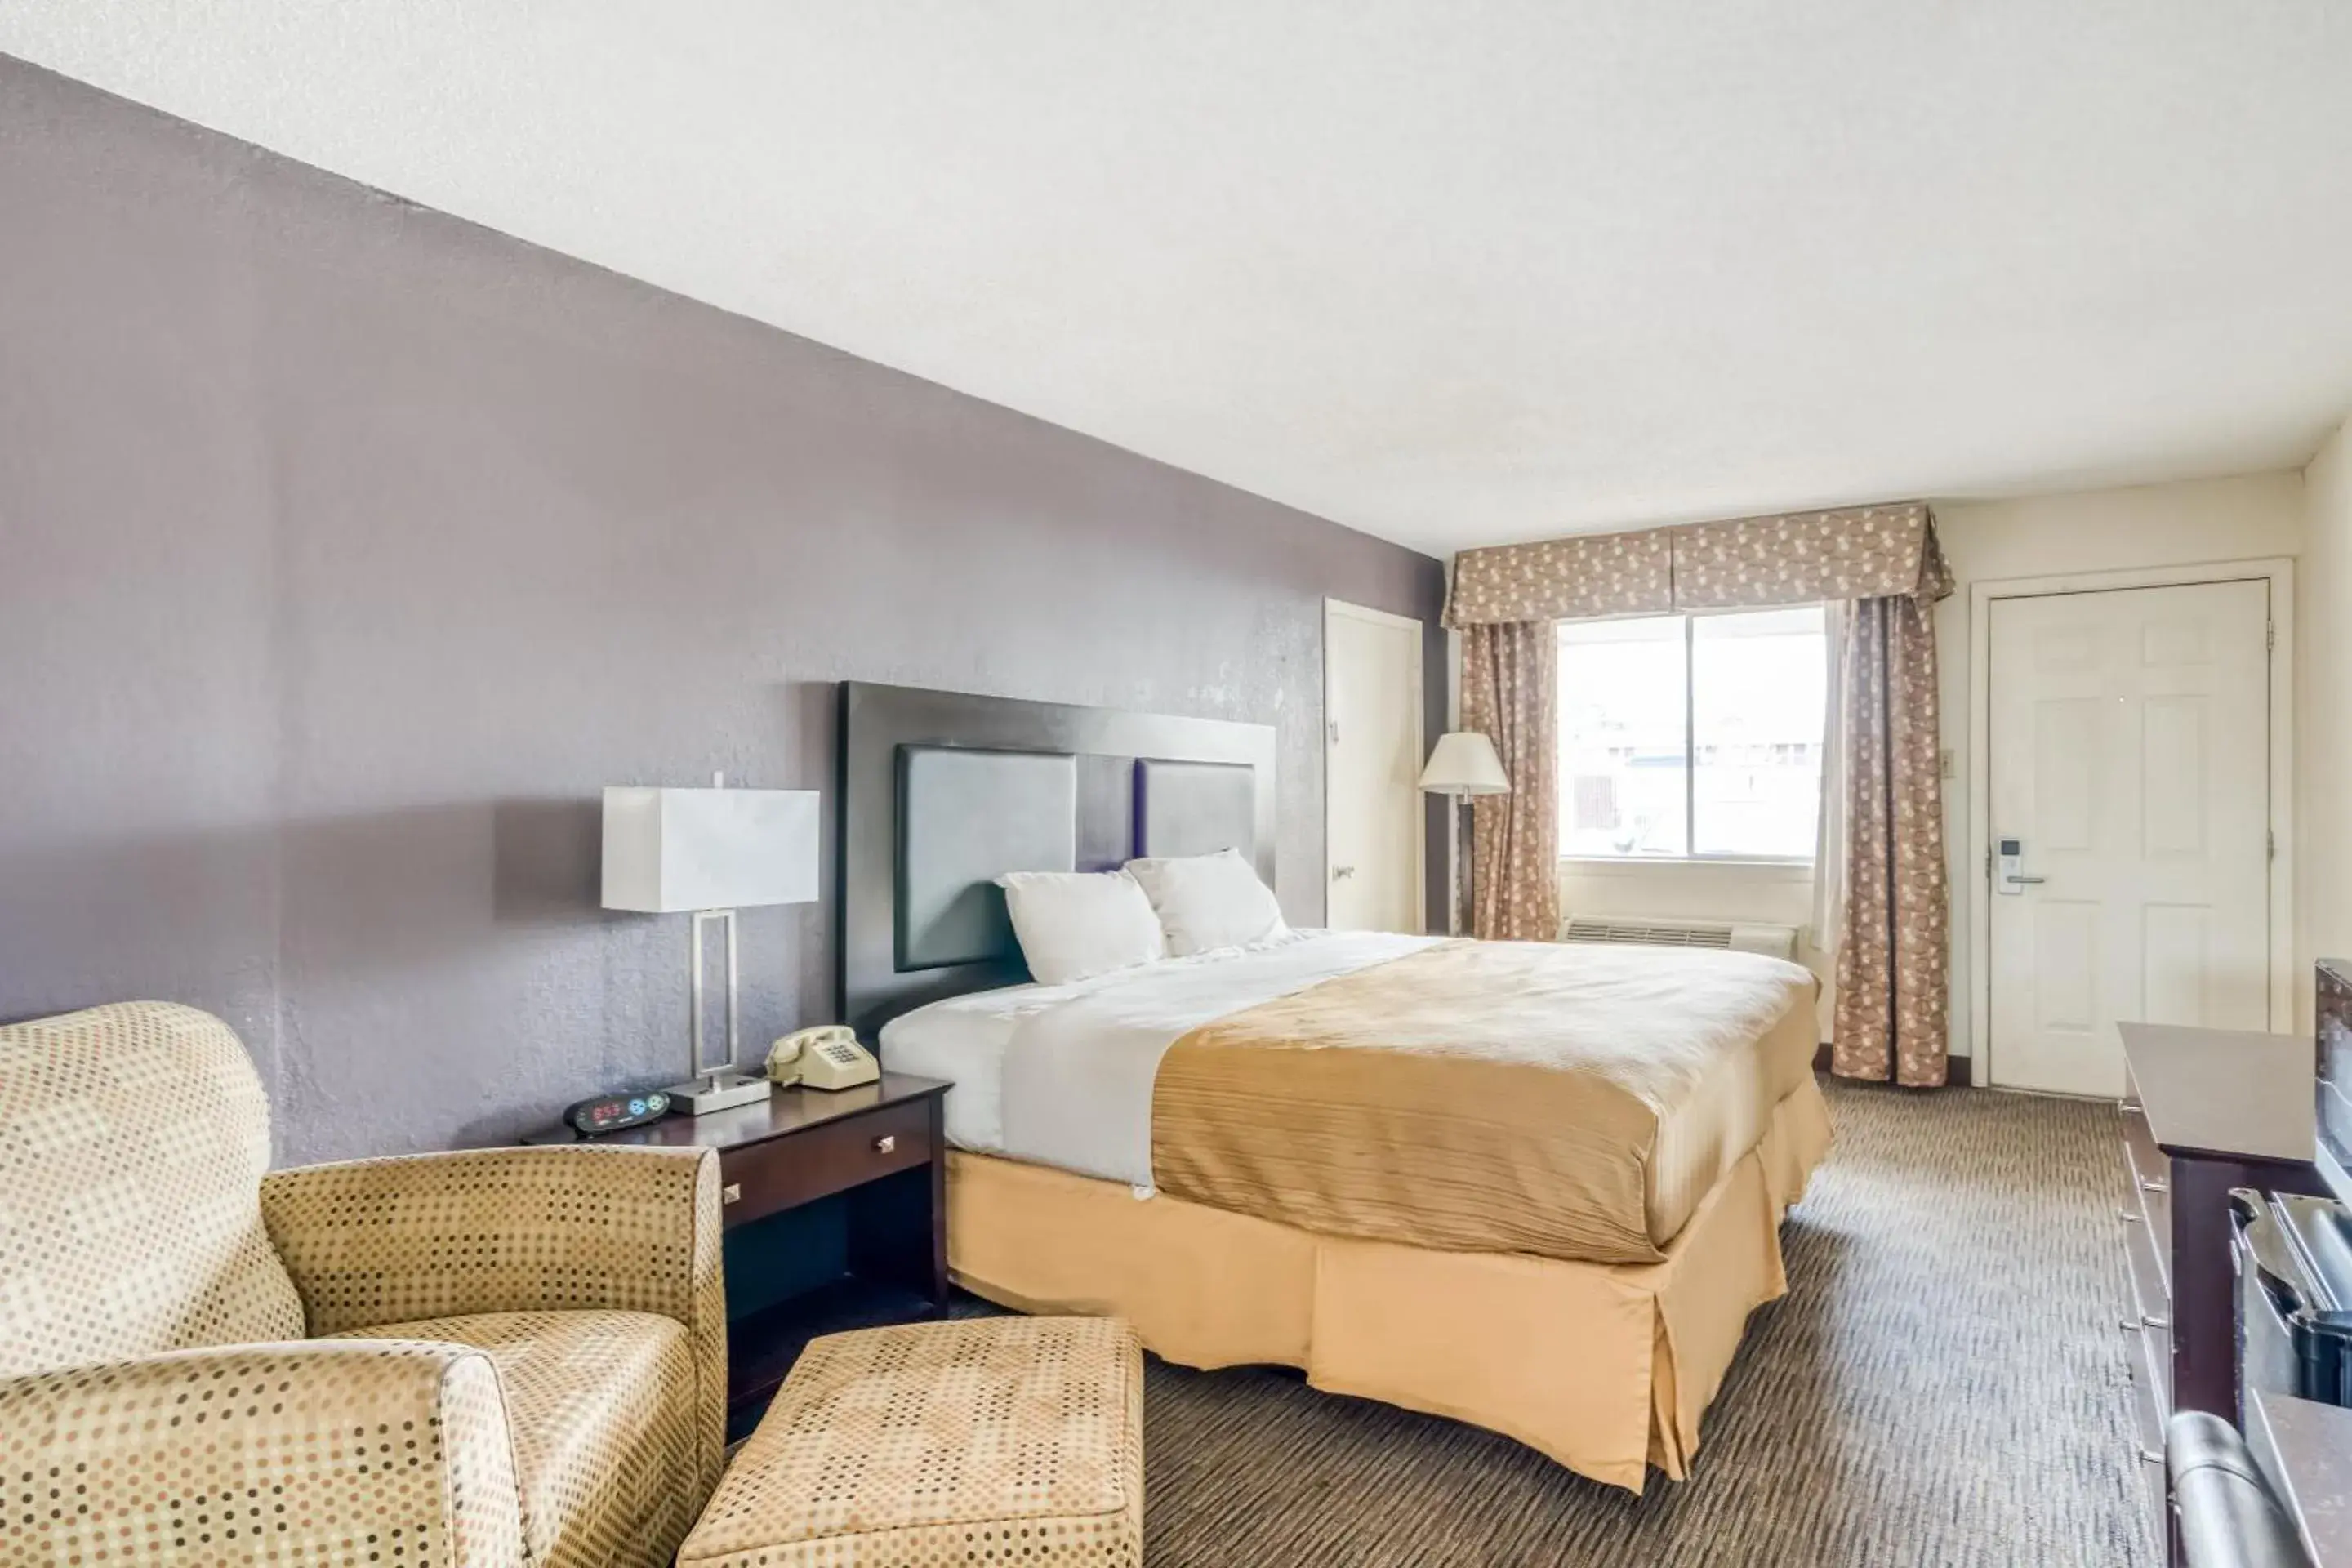 Bedroom, Room Photo in OYO Hotel Alexandria LA- Hwy 165